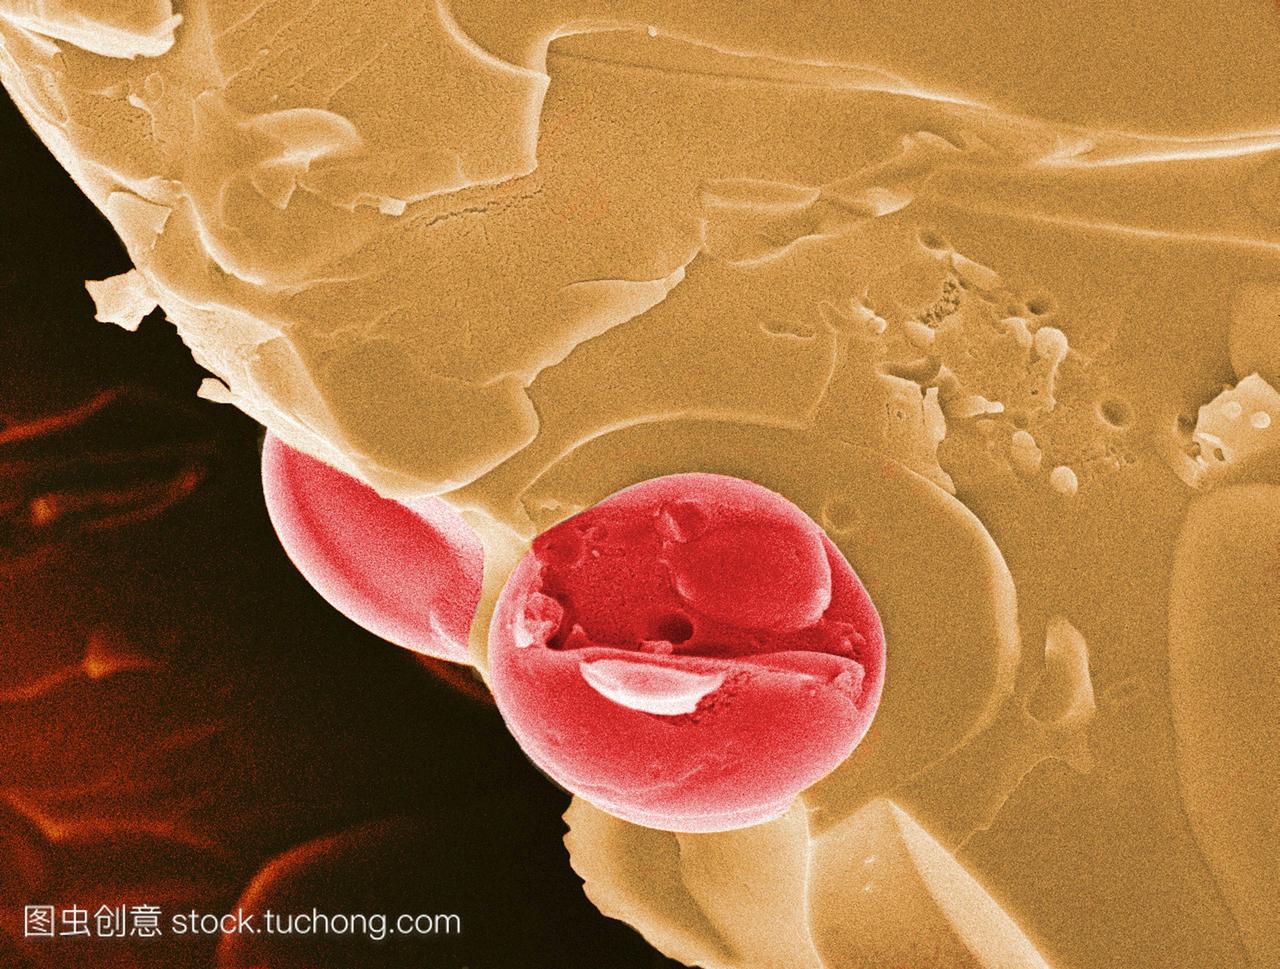 疟疾的血液细胞。彩色扫描电子显微摄影SEM